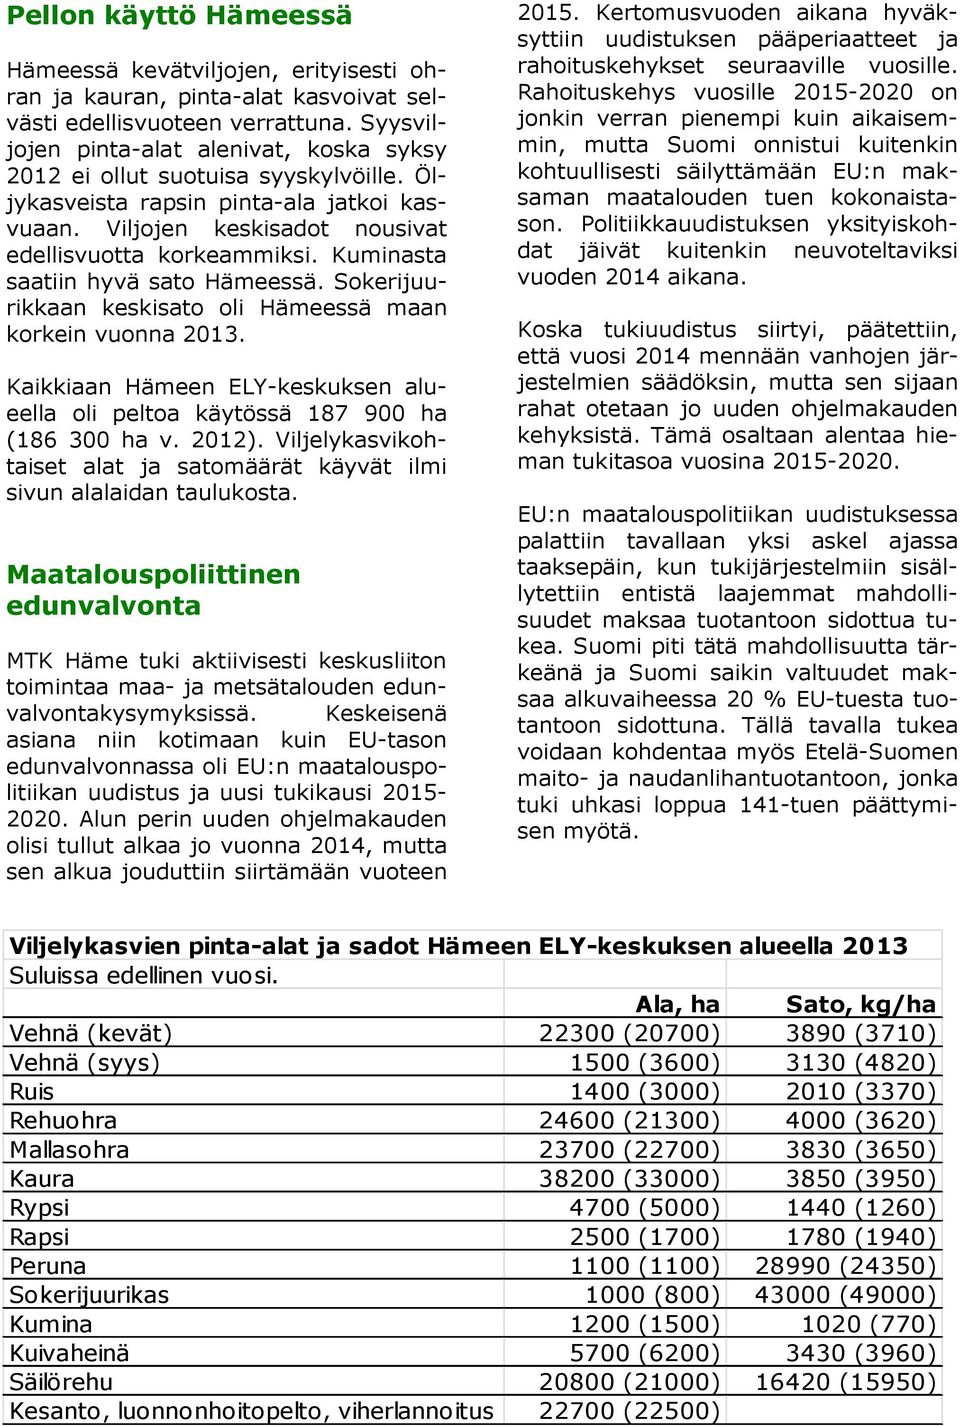 Kuminasta saatiin hyvä sato Hämeessä. Sokerijuurikkaan keskisato oli Hämeessä maan korkein vuonna 2013. Kaikkiaan Hämeen ELY-keskuksen alueella oli peltoa käytössä 187 900 ha (186 300 ha v. 2012).